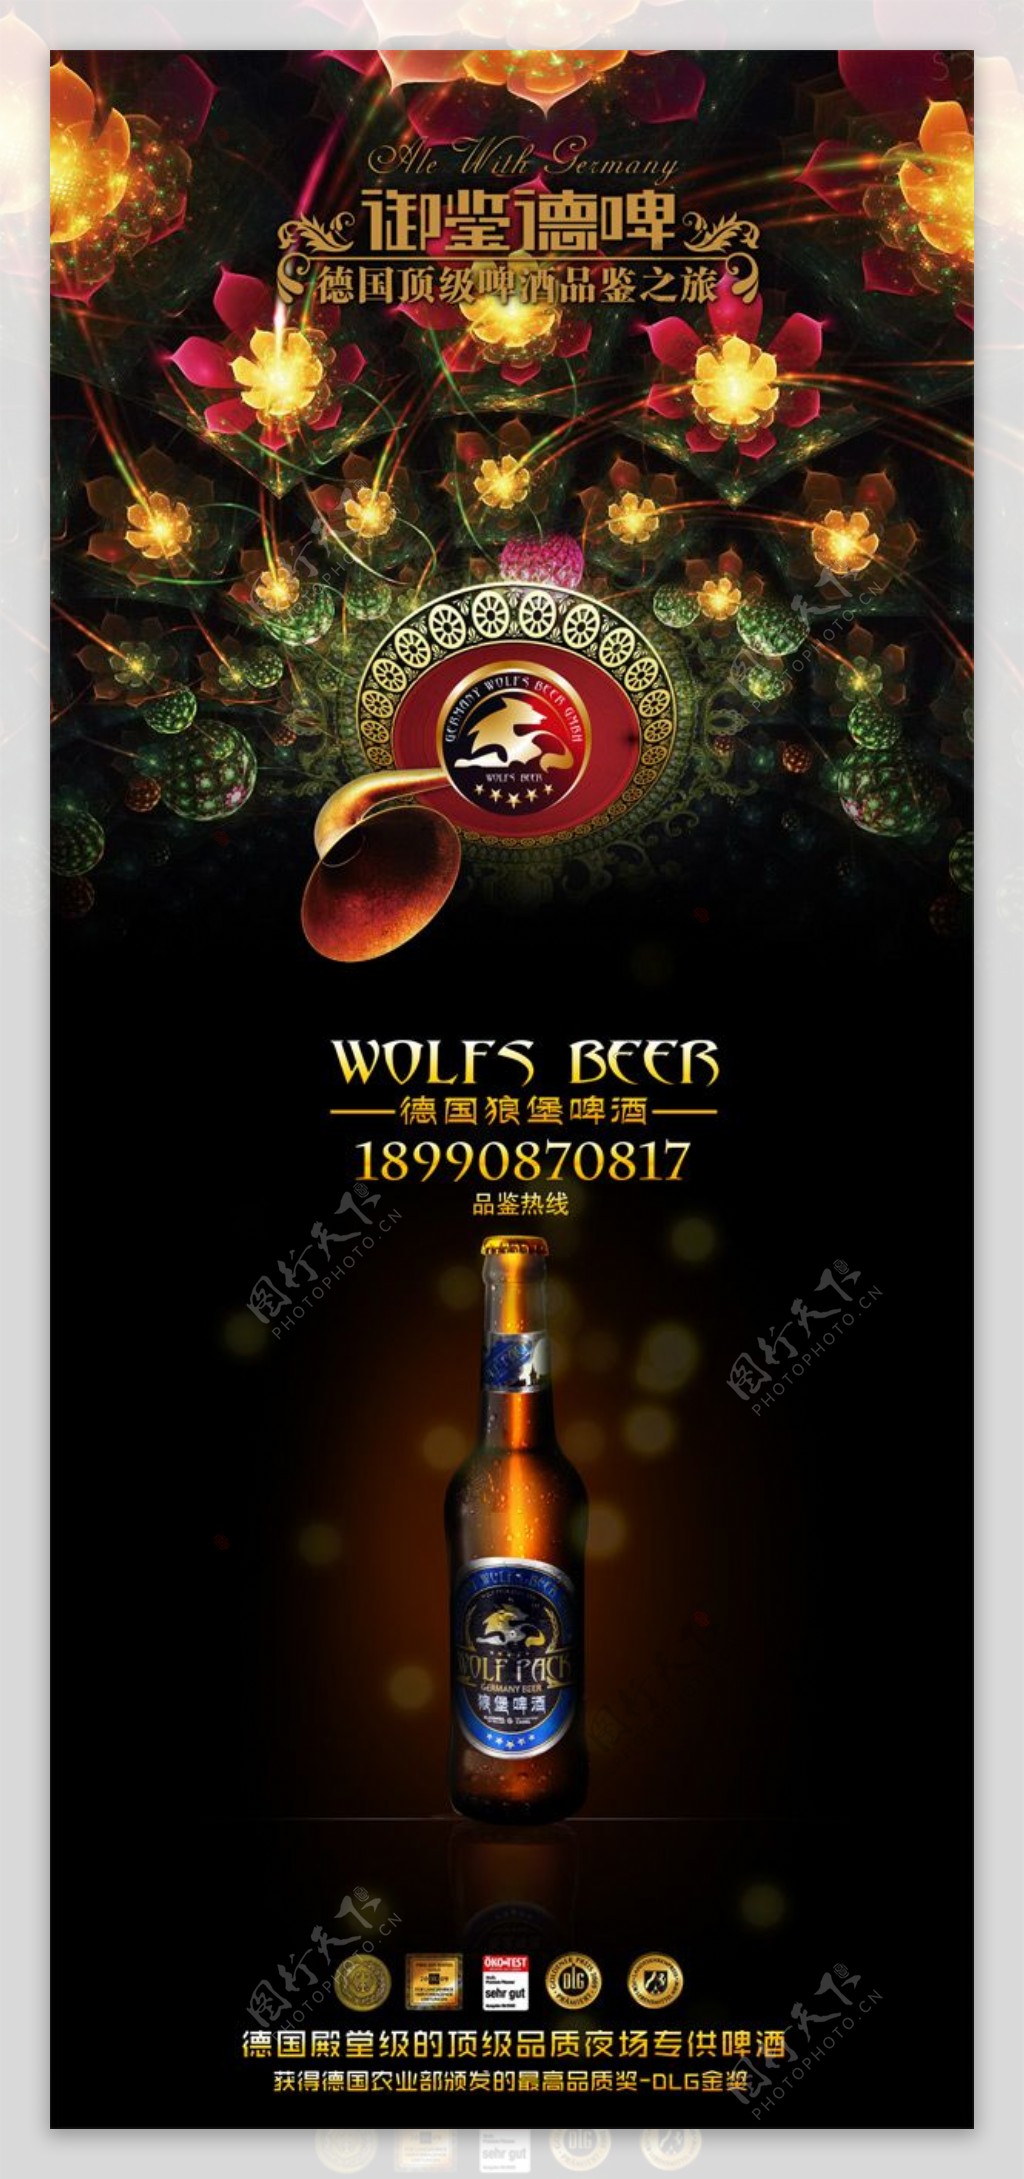 炫酷德国狼堡啤酒广告海报PSD素材下载